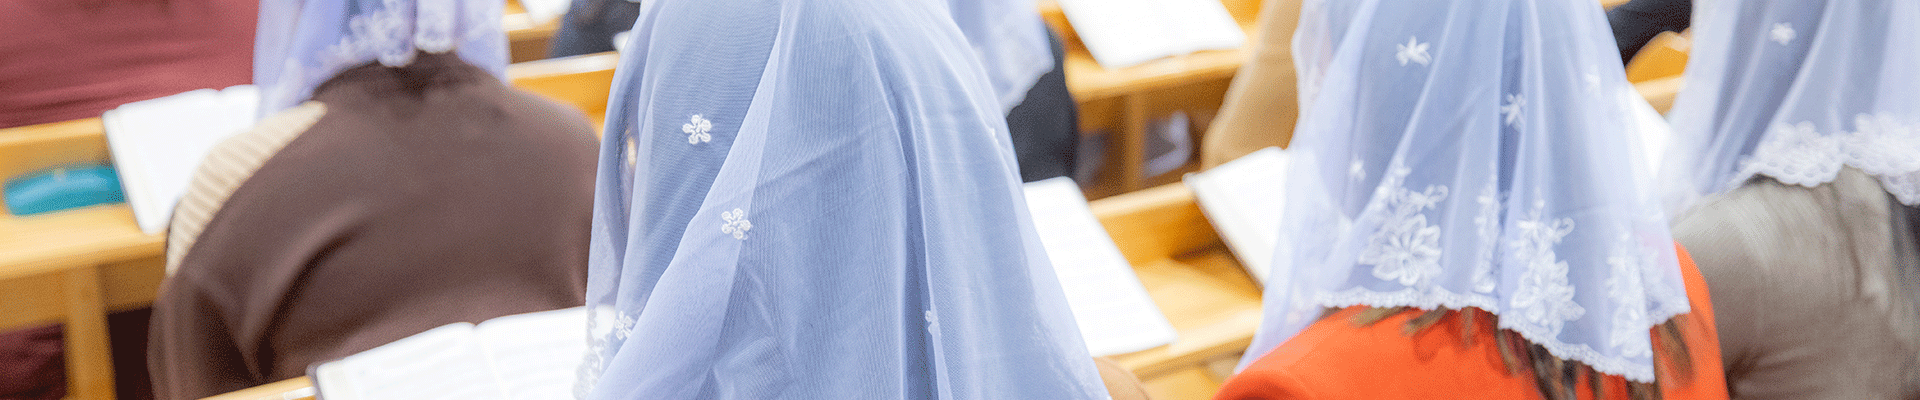 beliefs regulation of womens veil 2.png